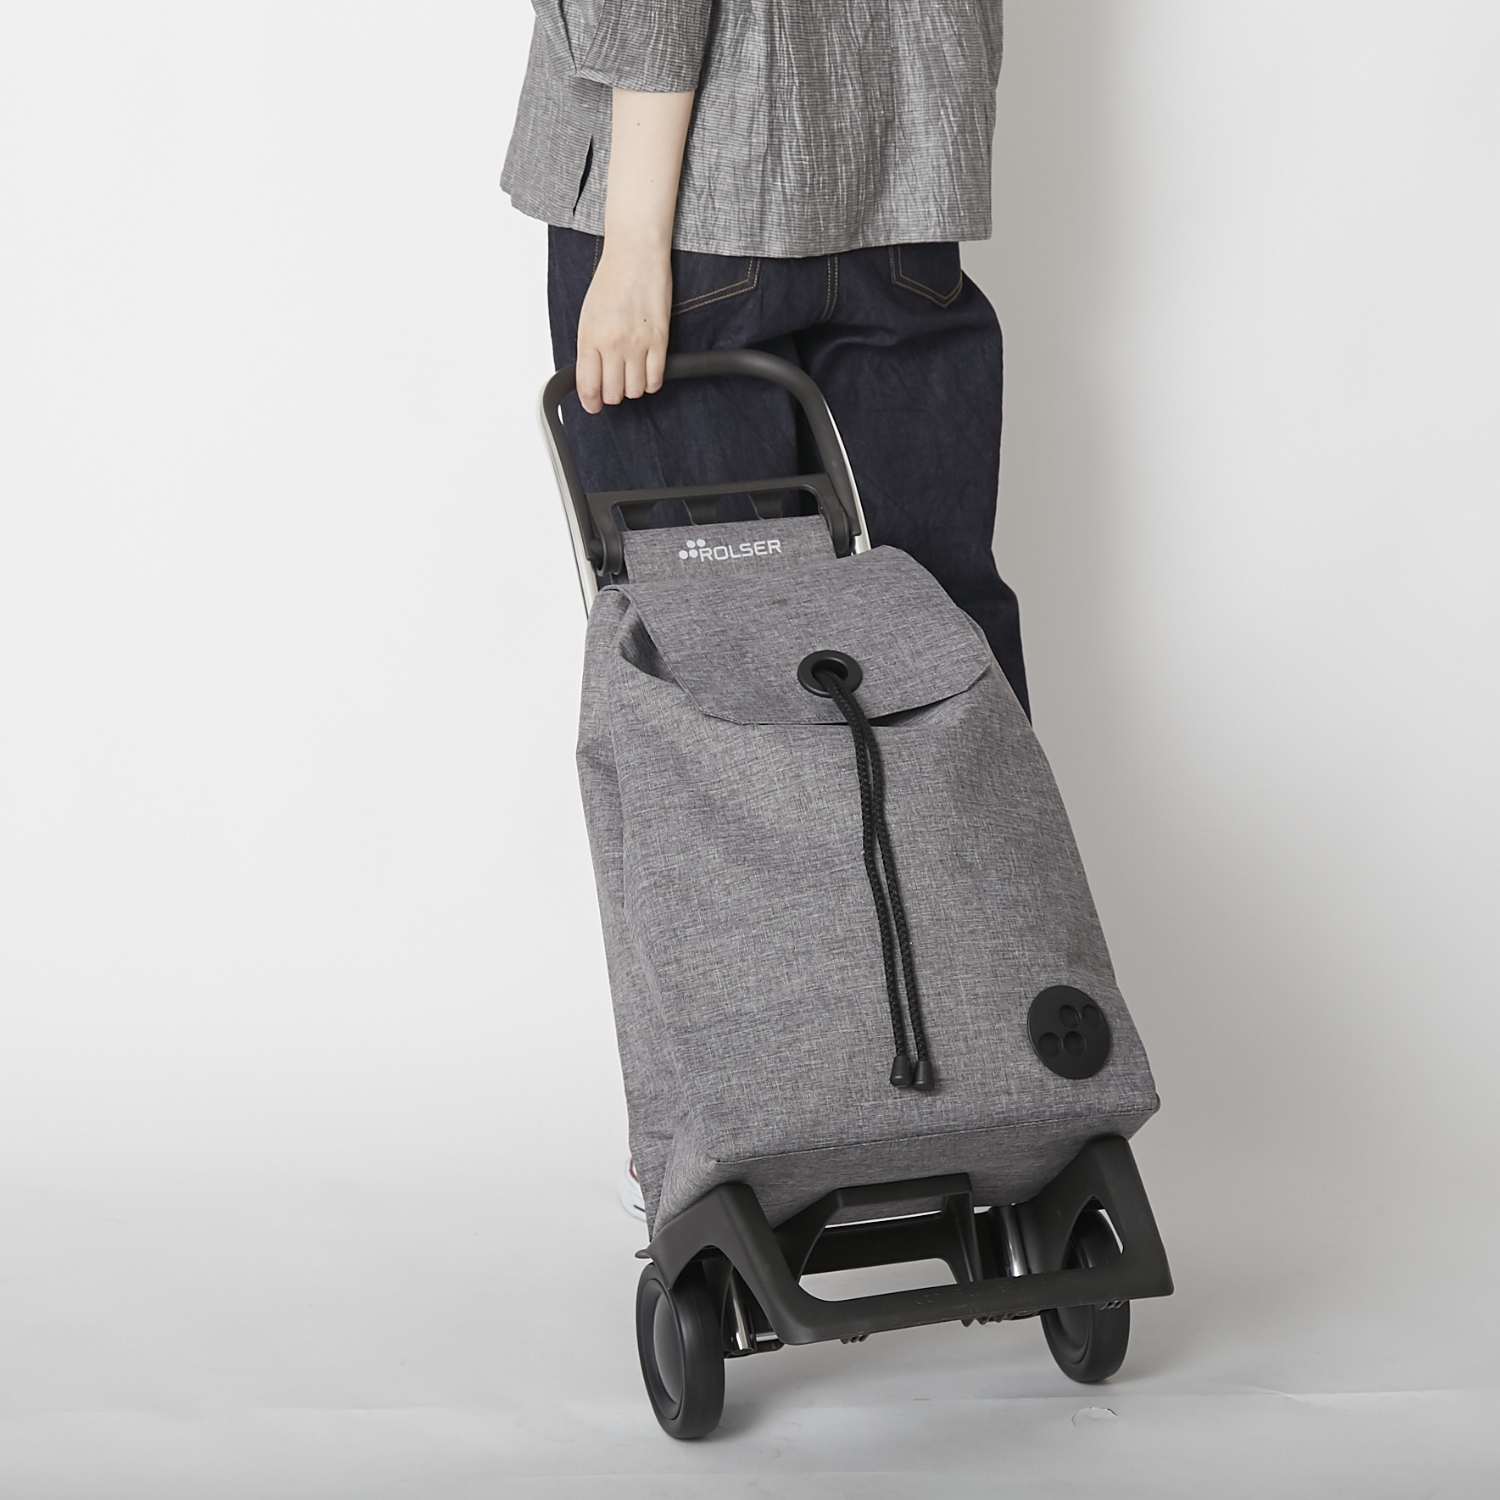 ROLSER/ショッピングカート BABY JOY モノトーン -たっぷり入って重い荷物も楽に運べる、静かなカート - スタイルストア